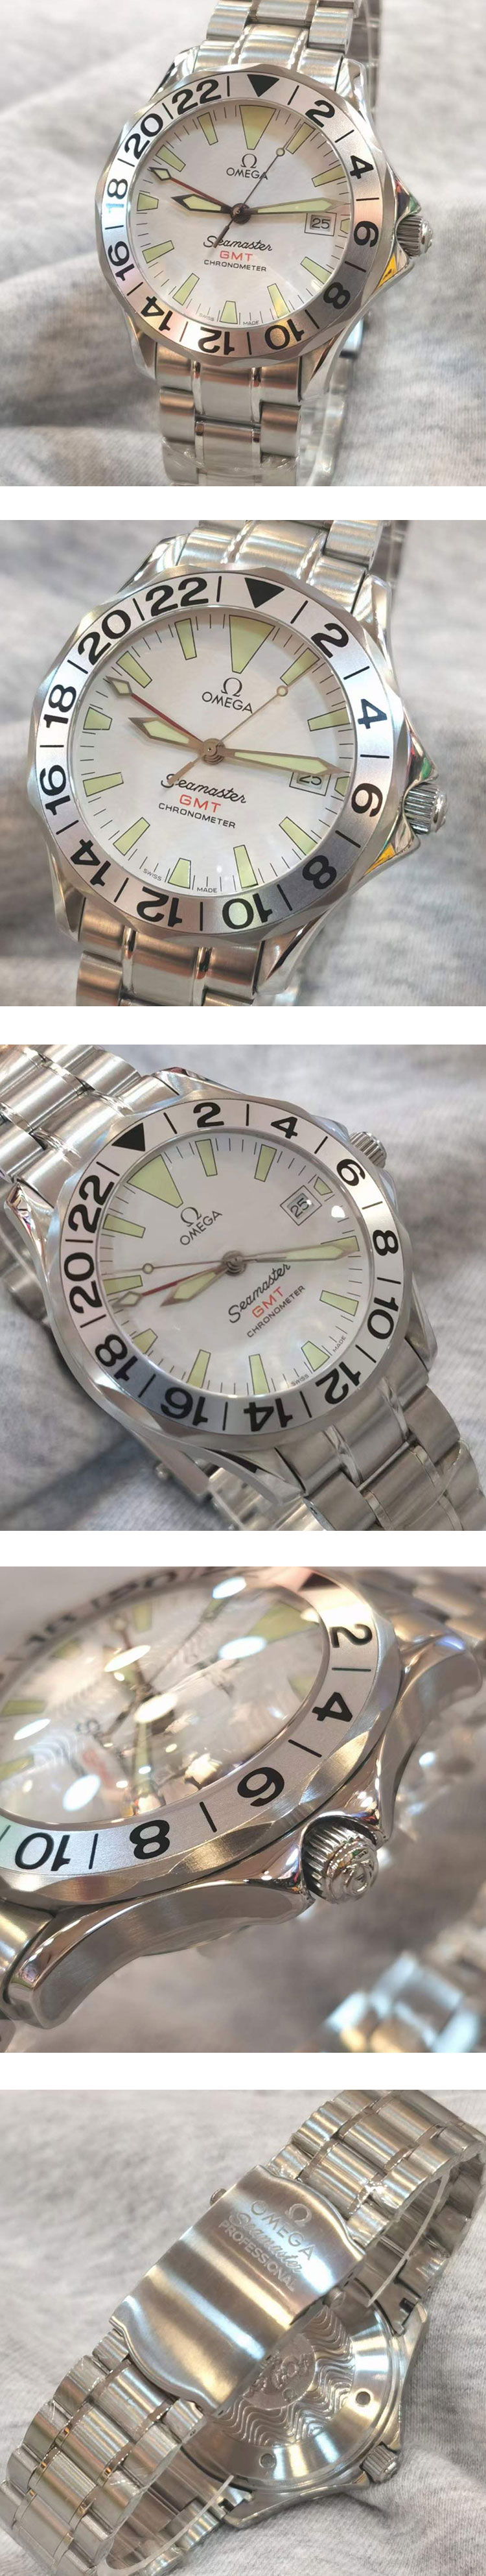 紳士用腕時計 オメガコピー シーマスター GMT 2538.20 ホワイト 男の魅力を演出